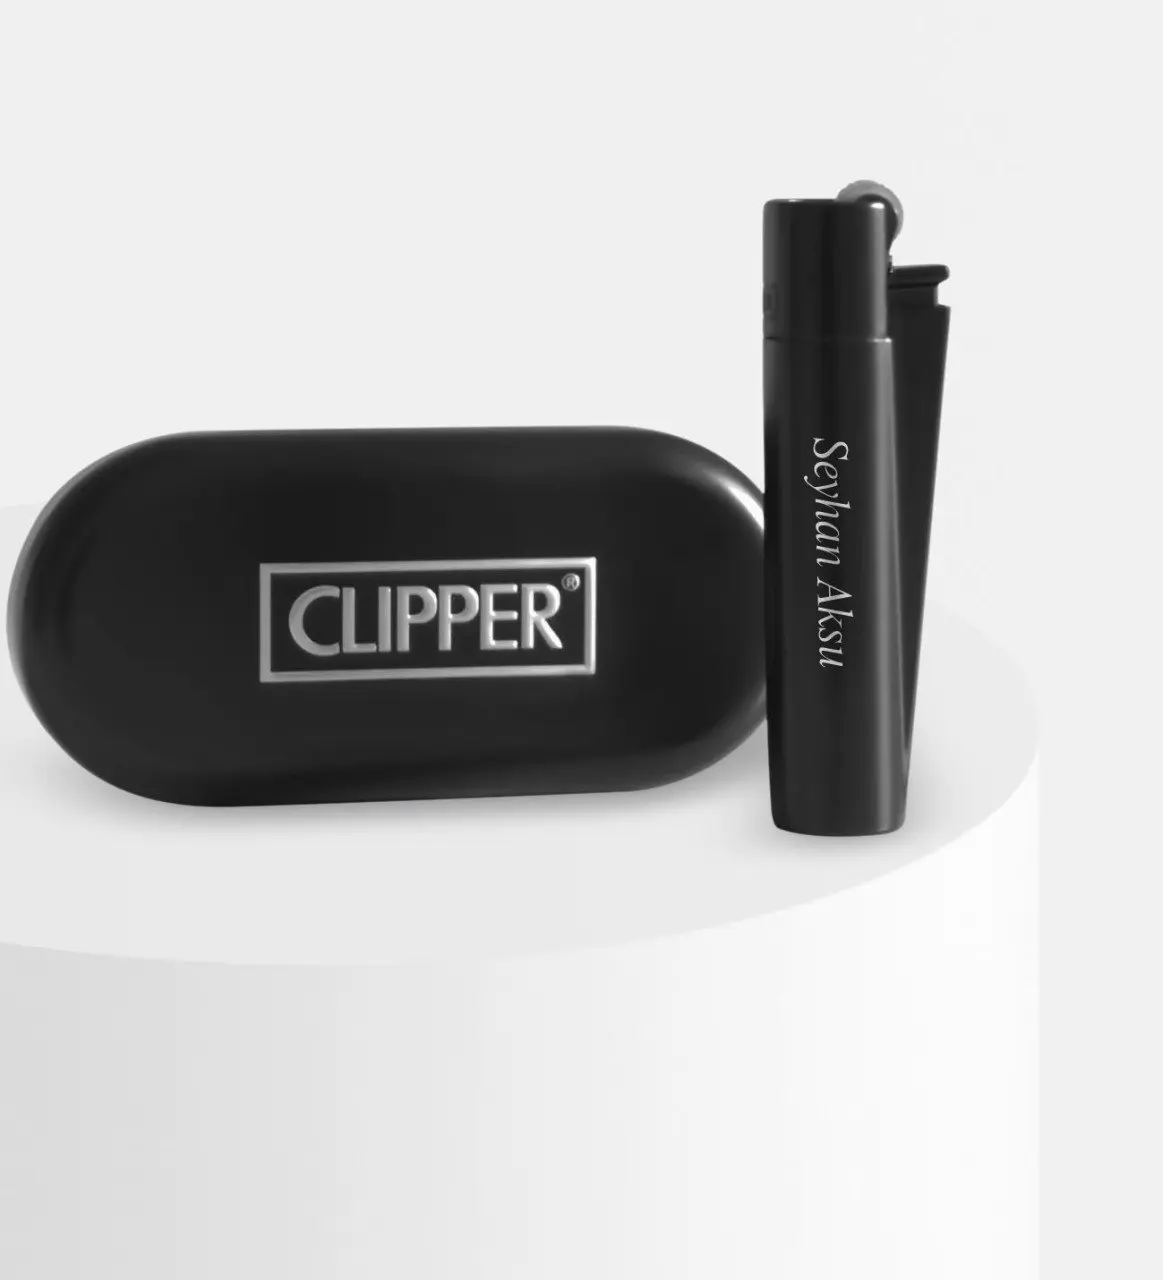 

Персонализированные металлическая коробка черная машинка для стрижки Зажигалка огнеупорная сигарета kishye индивидуальный дизайн сувенир Д...